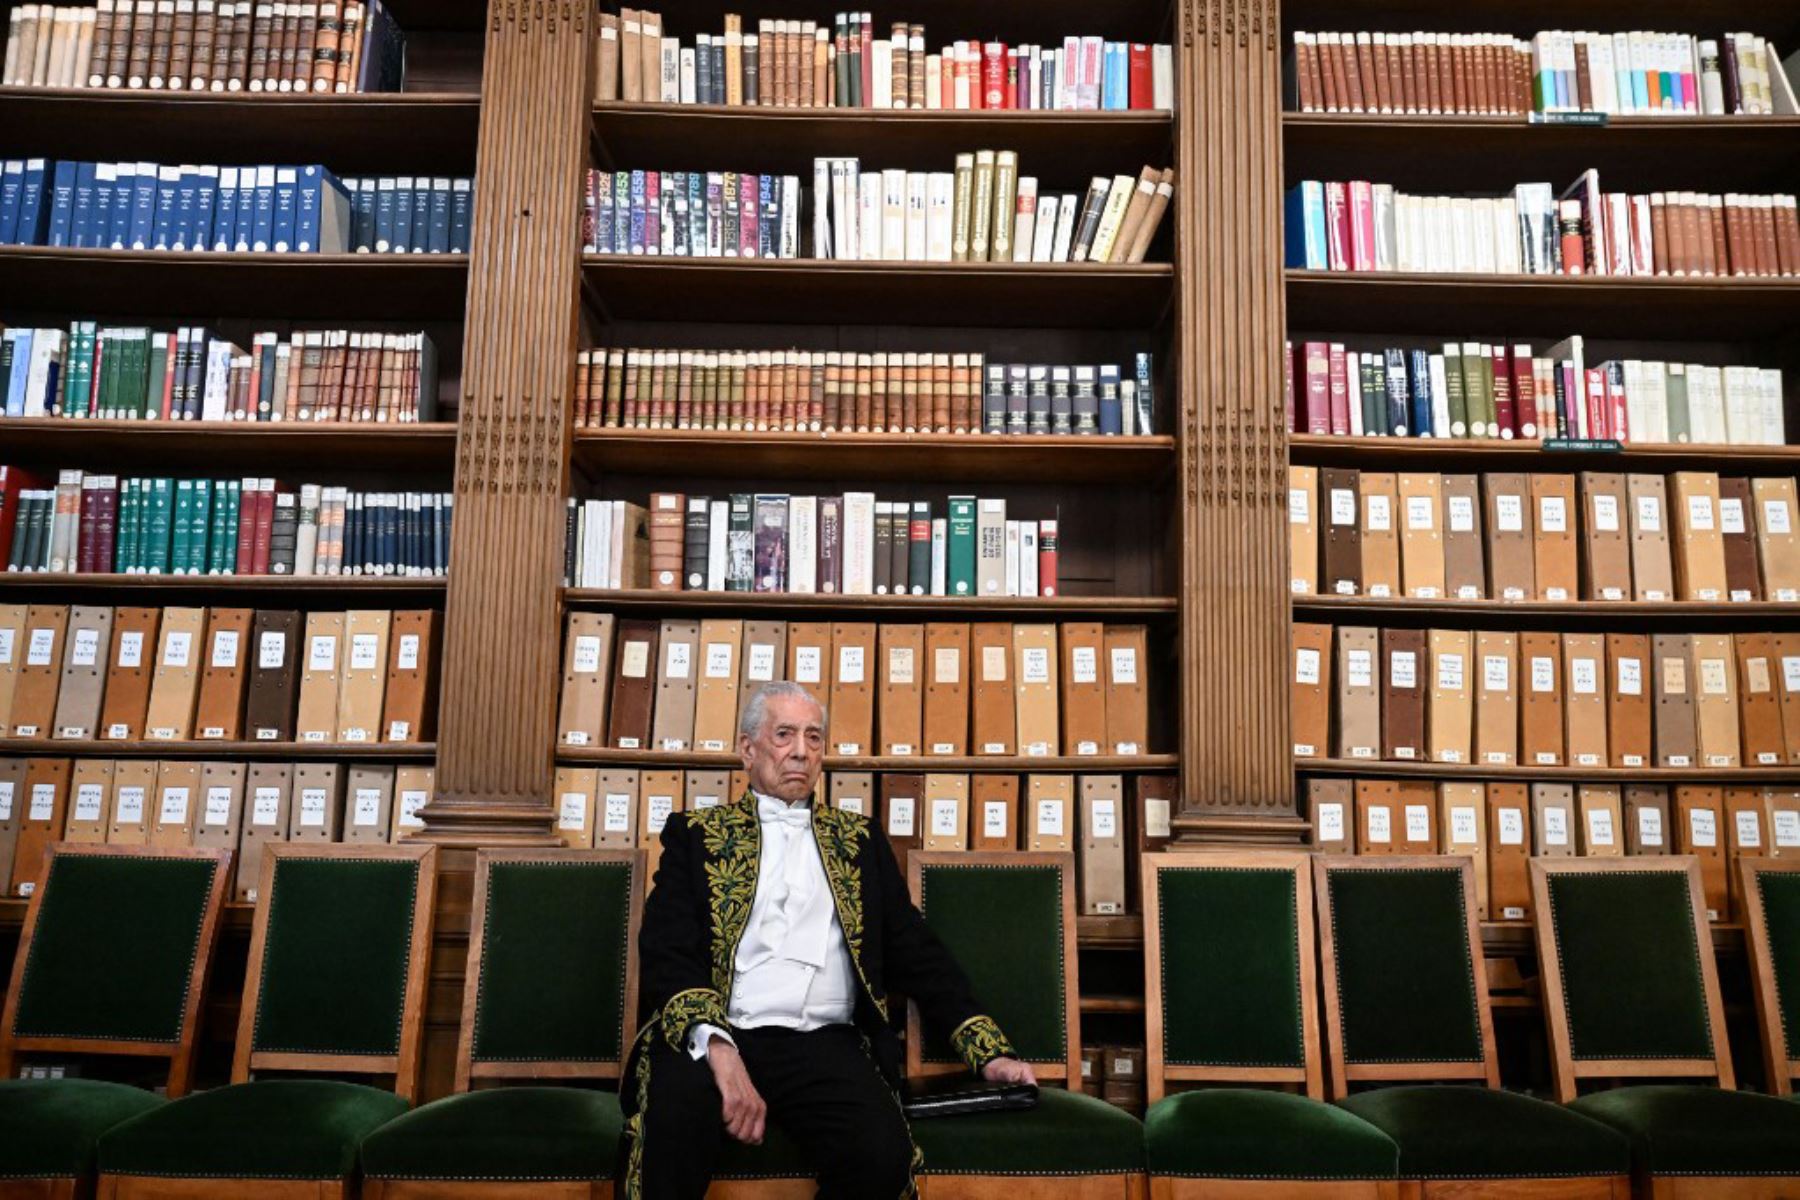 El escritor peruano y ganador del premio Nobel de literatura Mario Vargas Llosa posa para una fotografía antes de su inducción a la Académie Francaise (Academia Francesa), en París. Foto: AFP